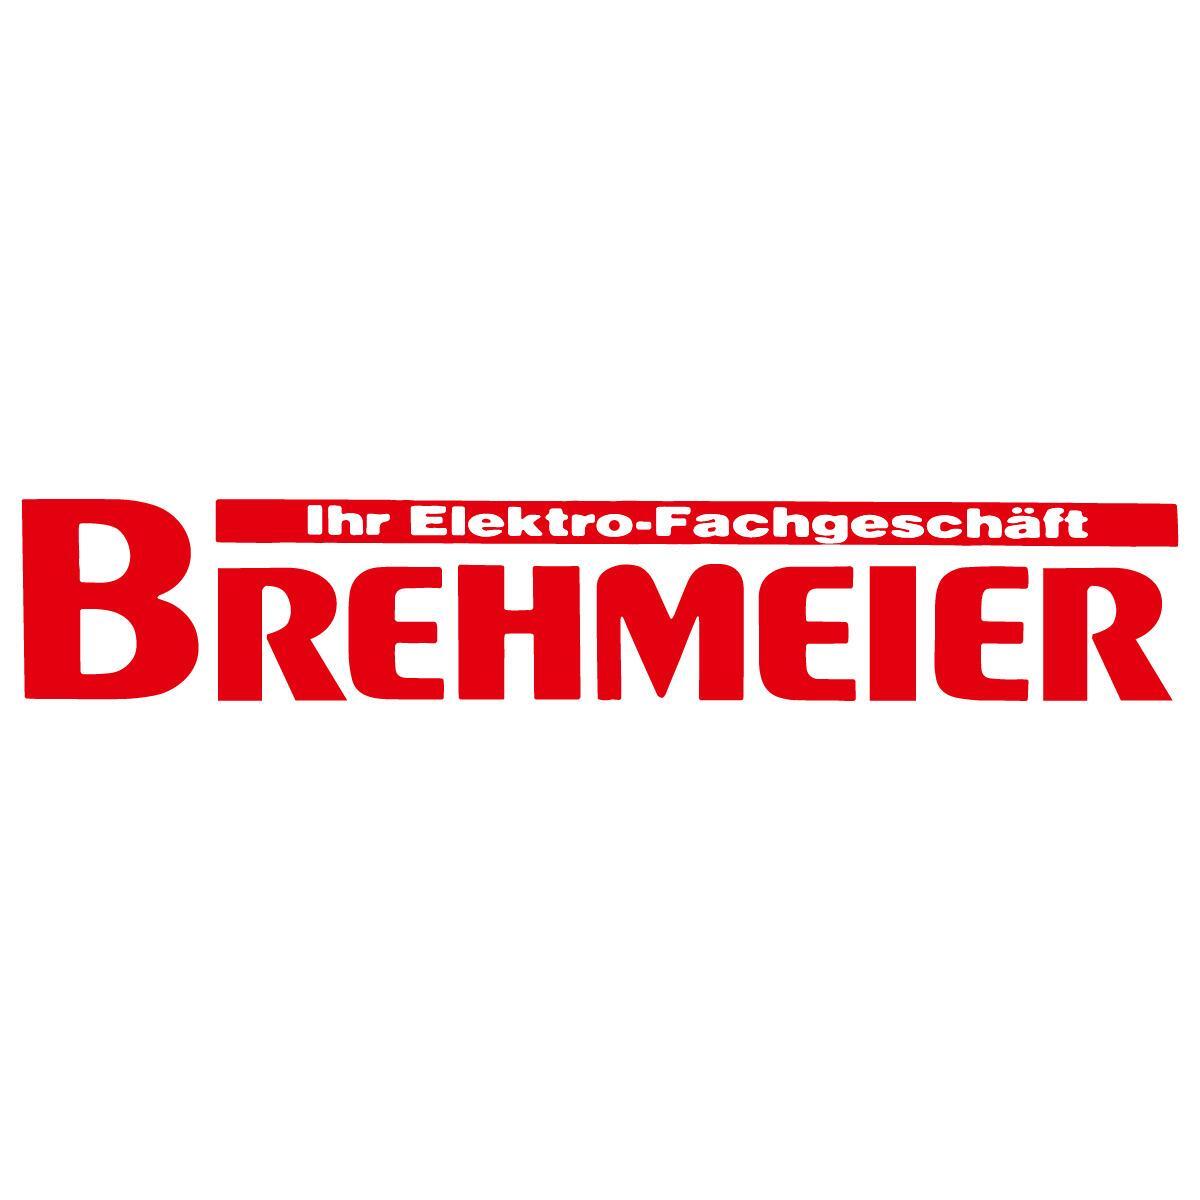 Heinrich Brehmeier Elektro-Fachgeschäft in Aerzen - Logo